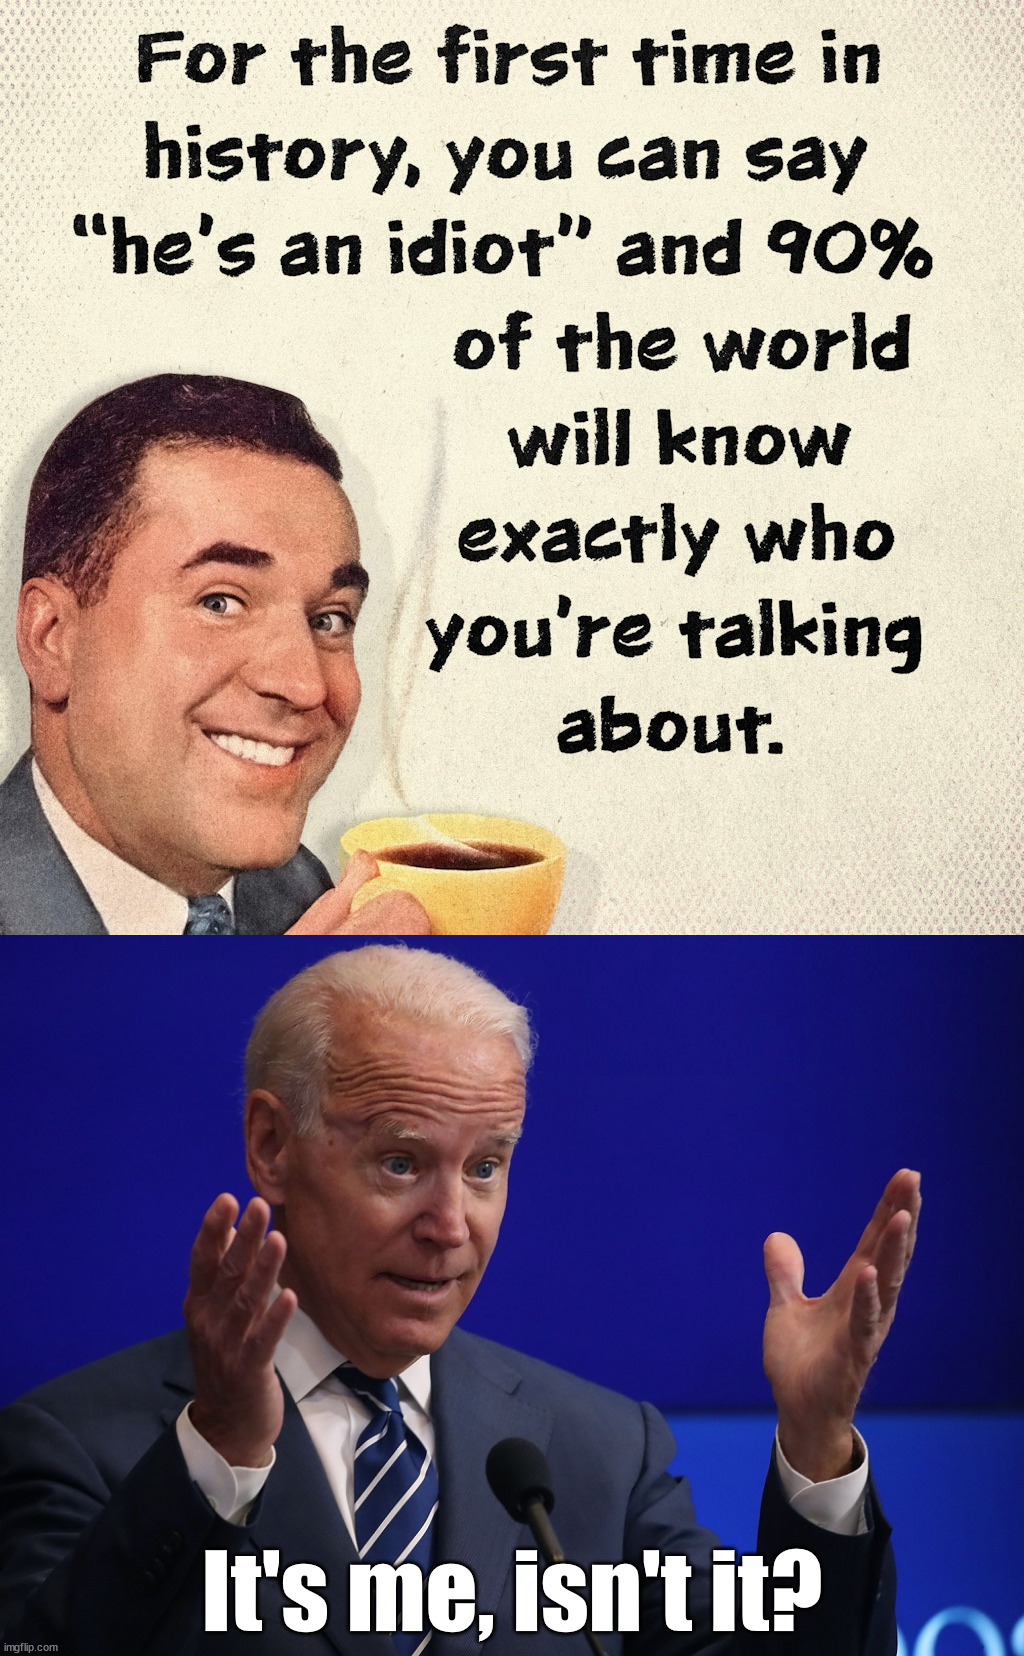 Finally got it right Joe | It's me, isn't it? | image tagged in joe biden - hands up,political meme | made w/ Imgflip meme maker